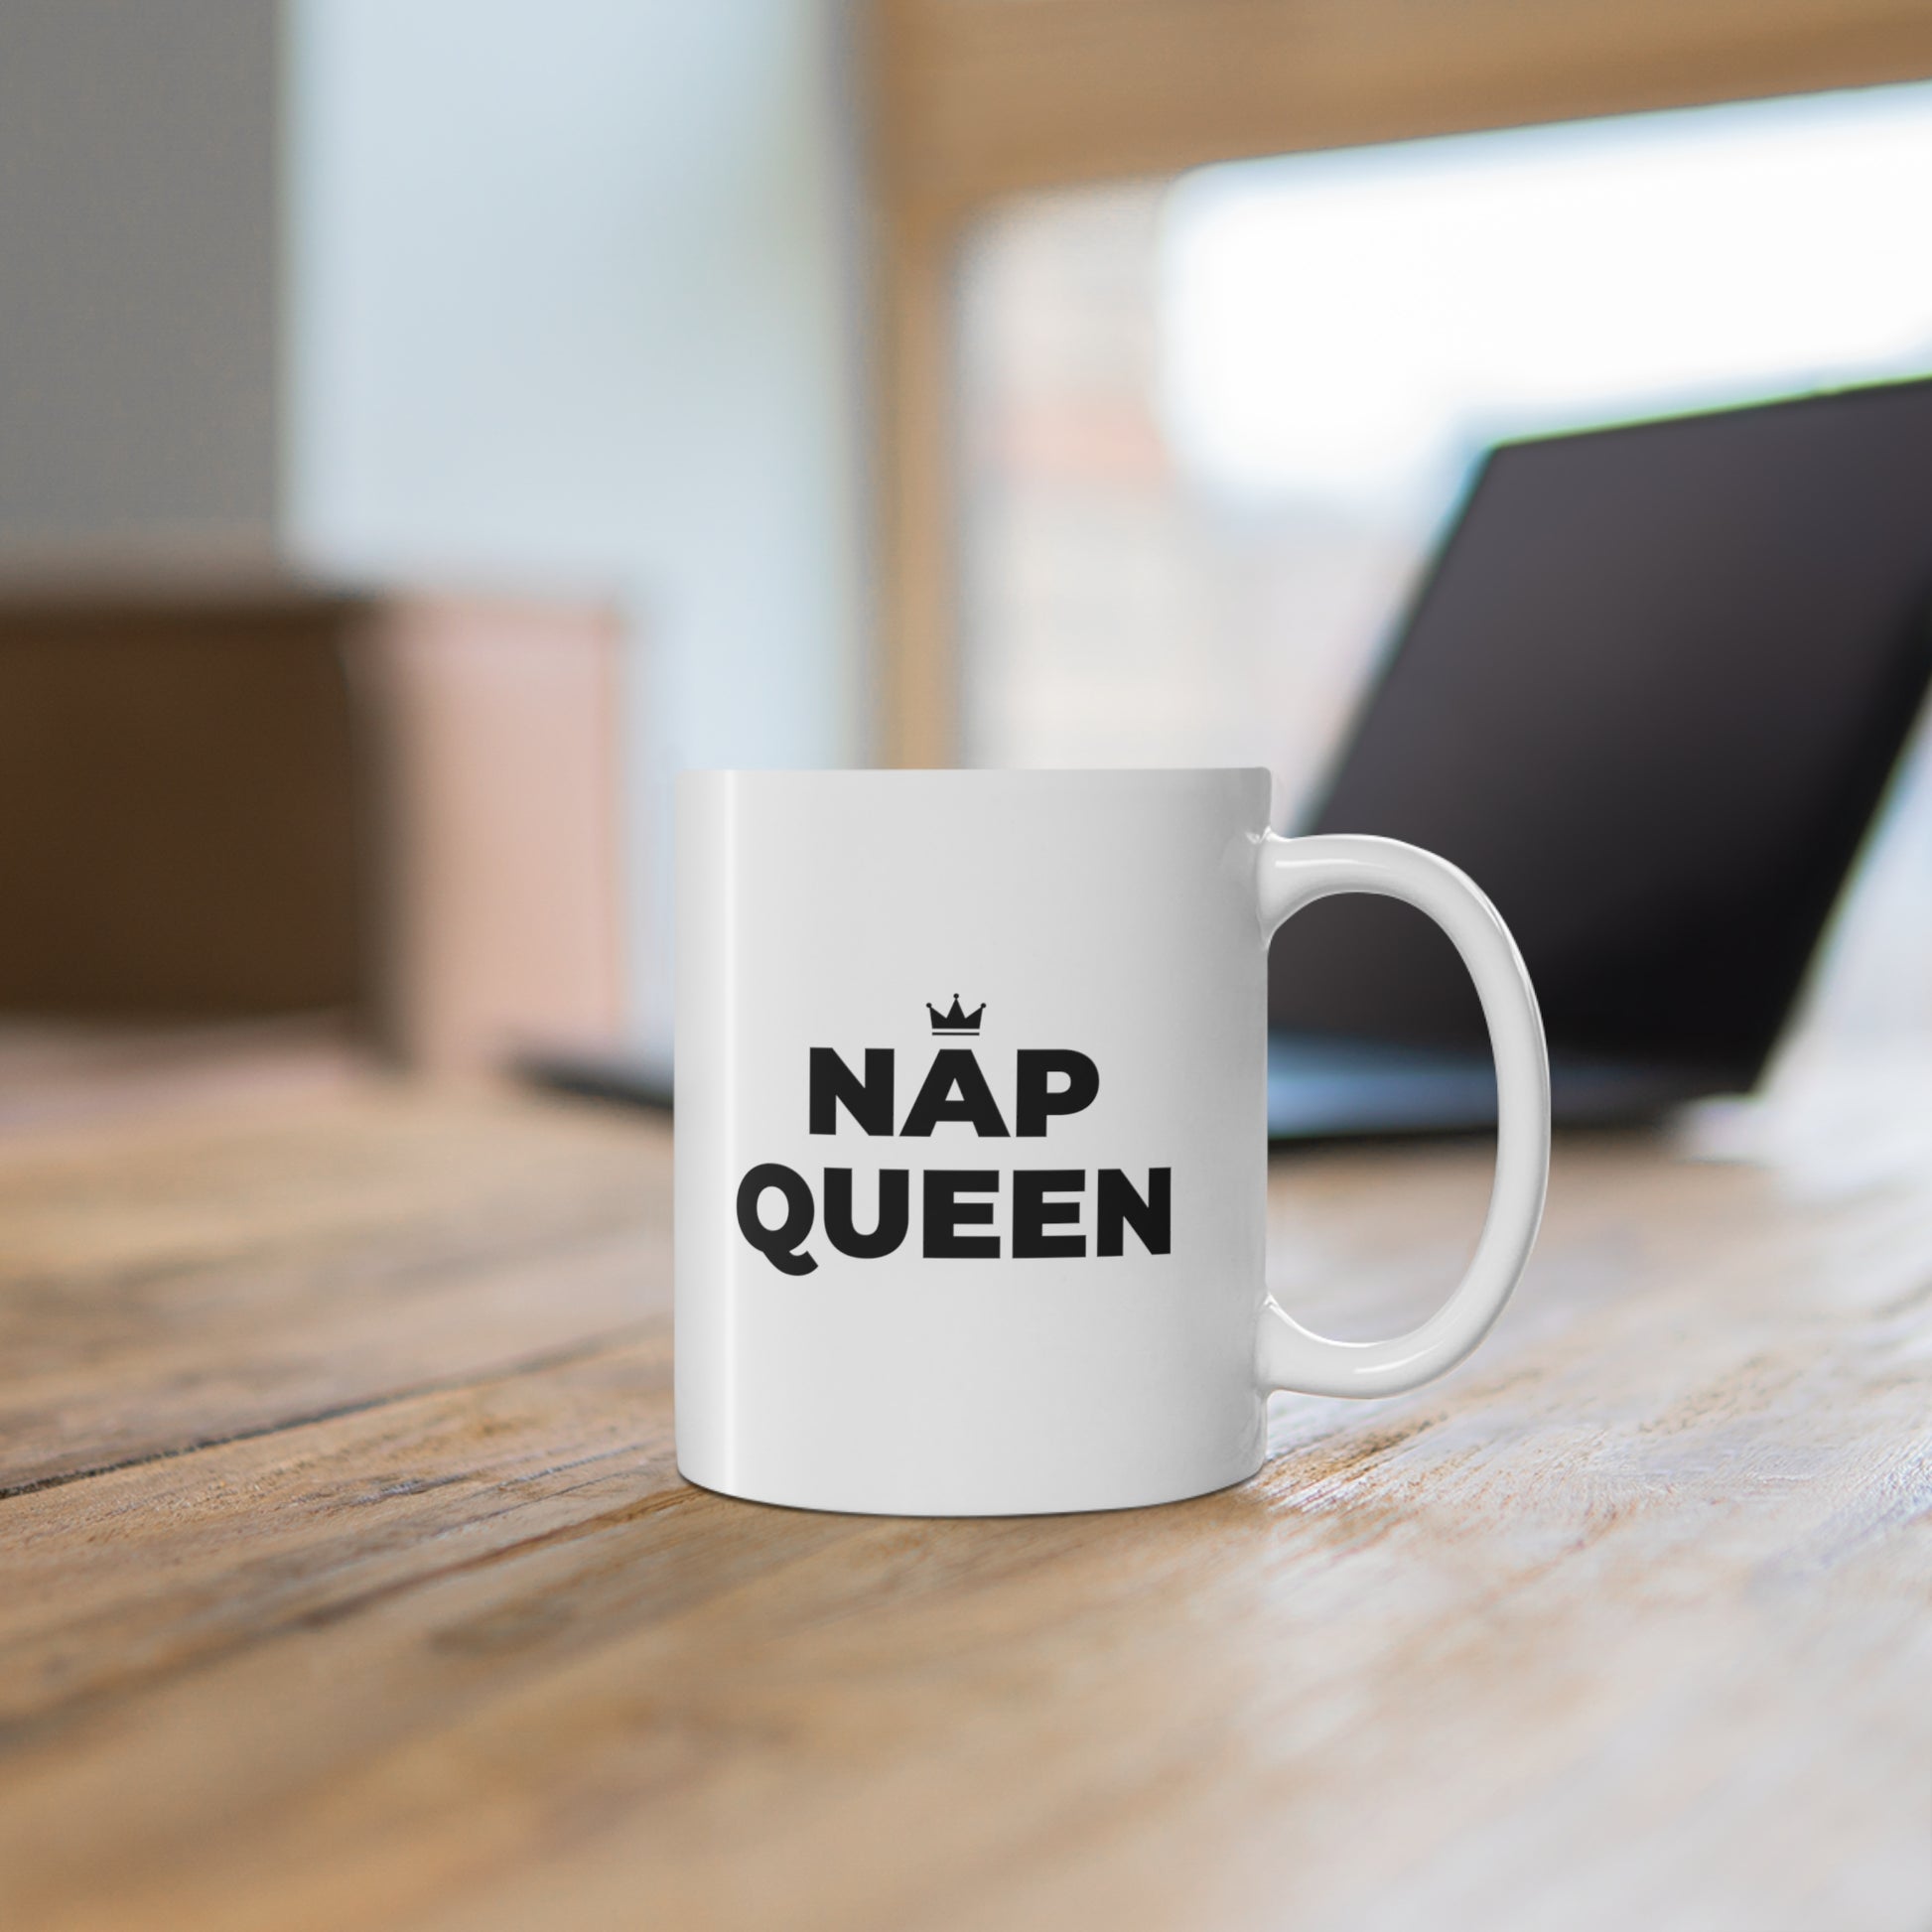 11oz ceramic mug with quote Nap Queen